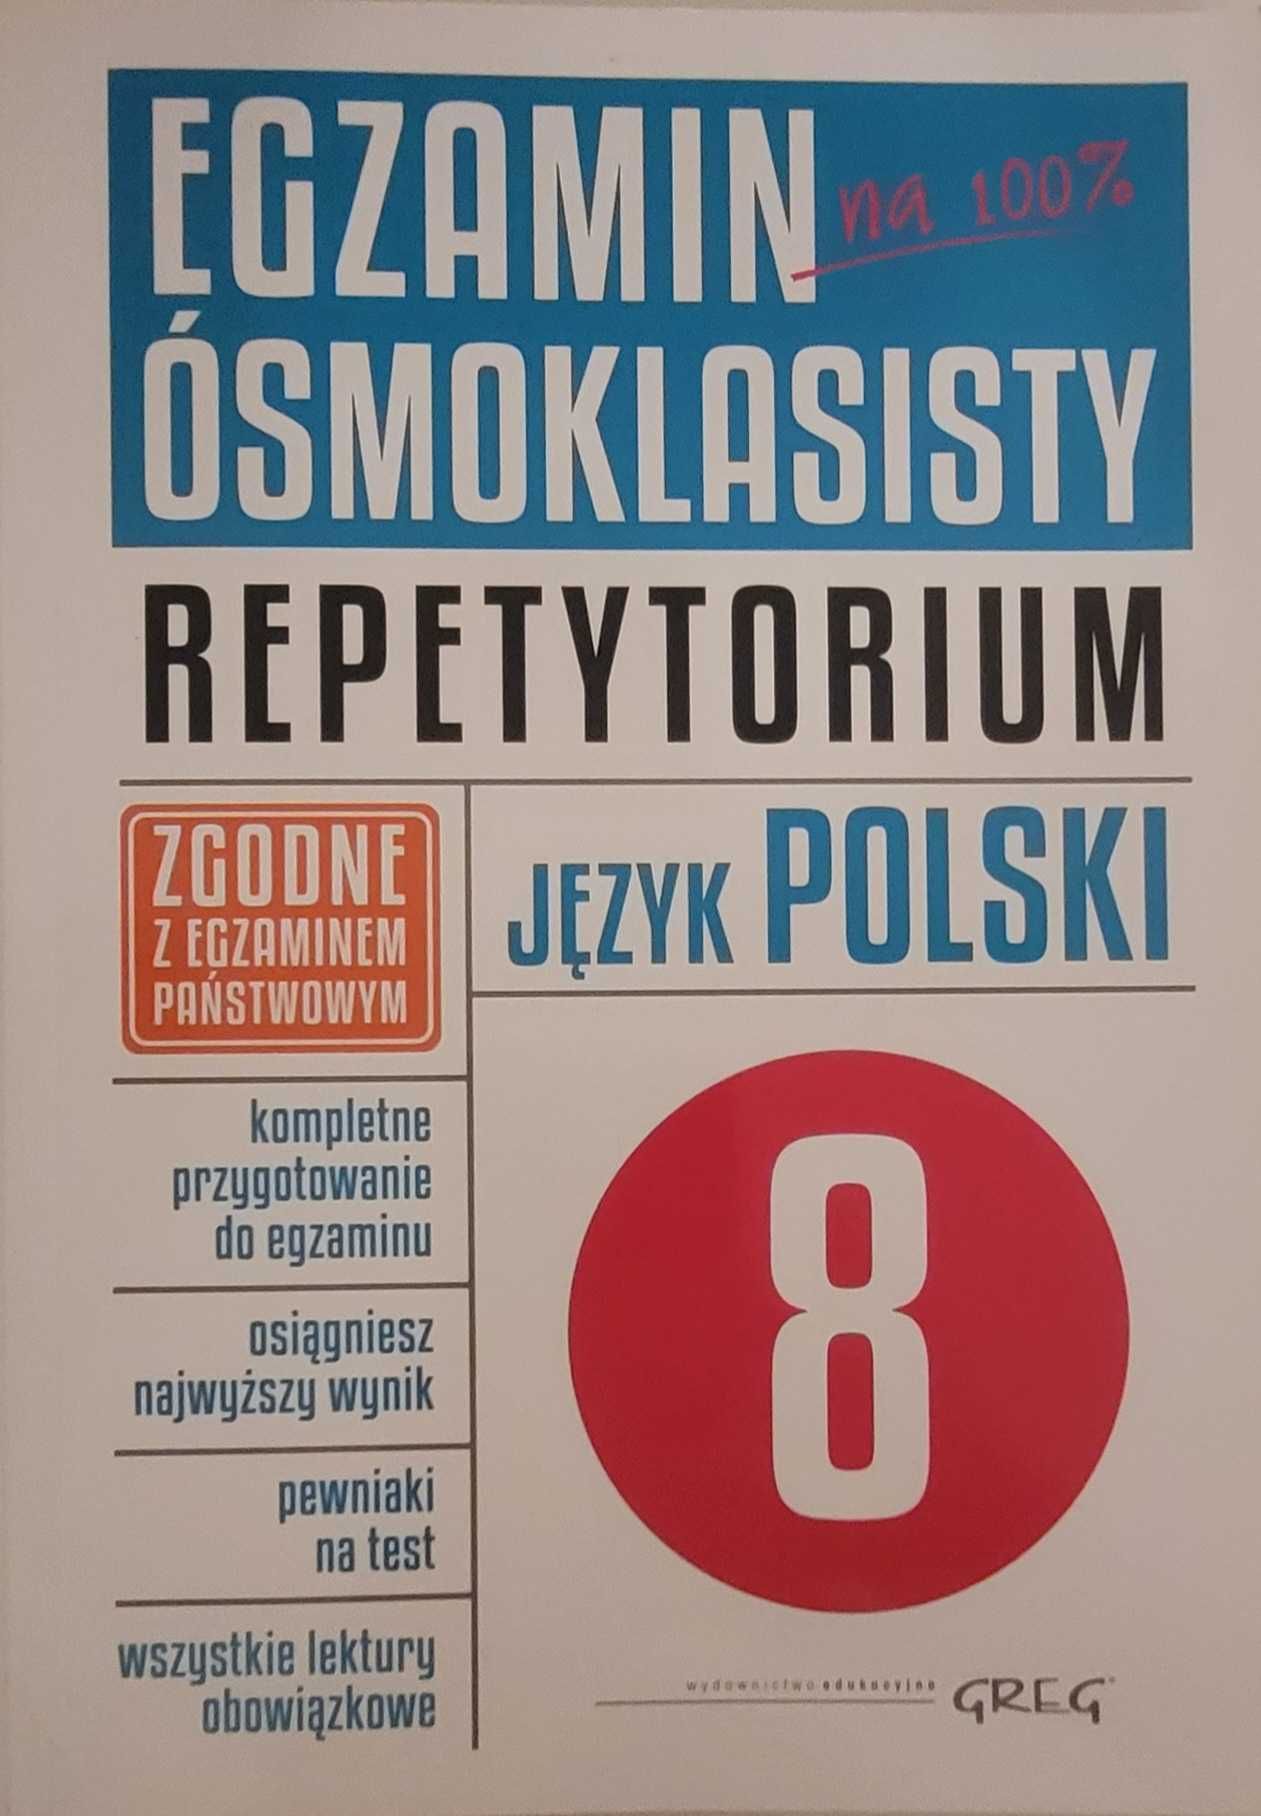 Egzamin ósmoklasisty Repetytorium jezyk polski Greg